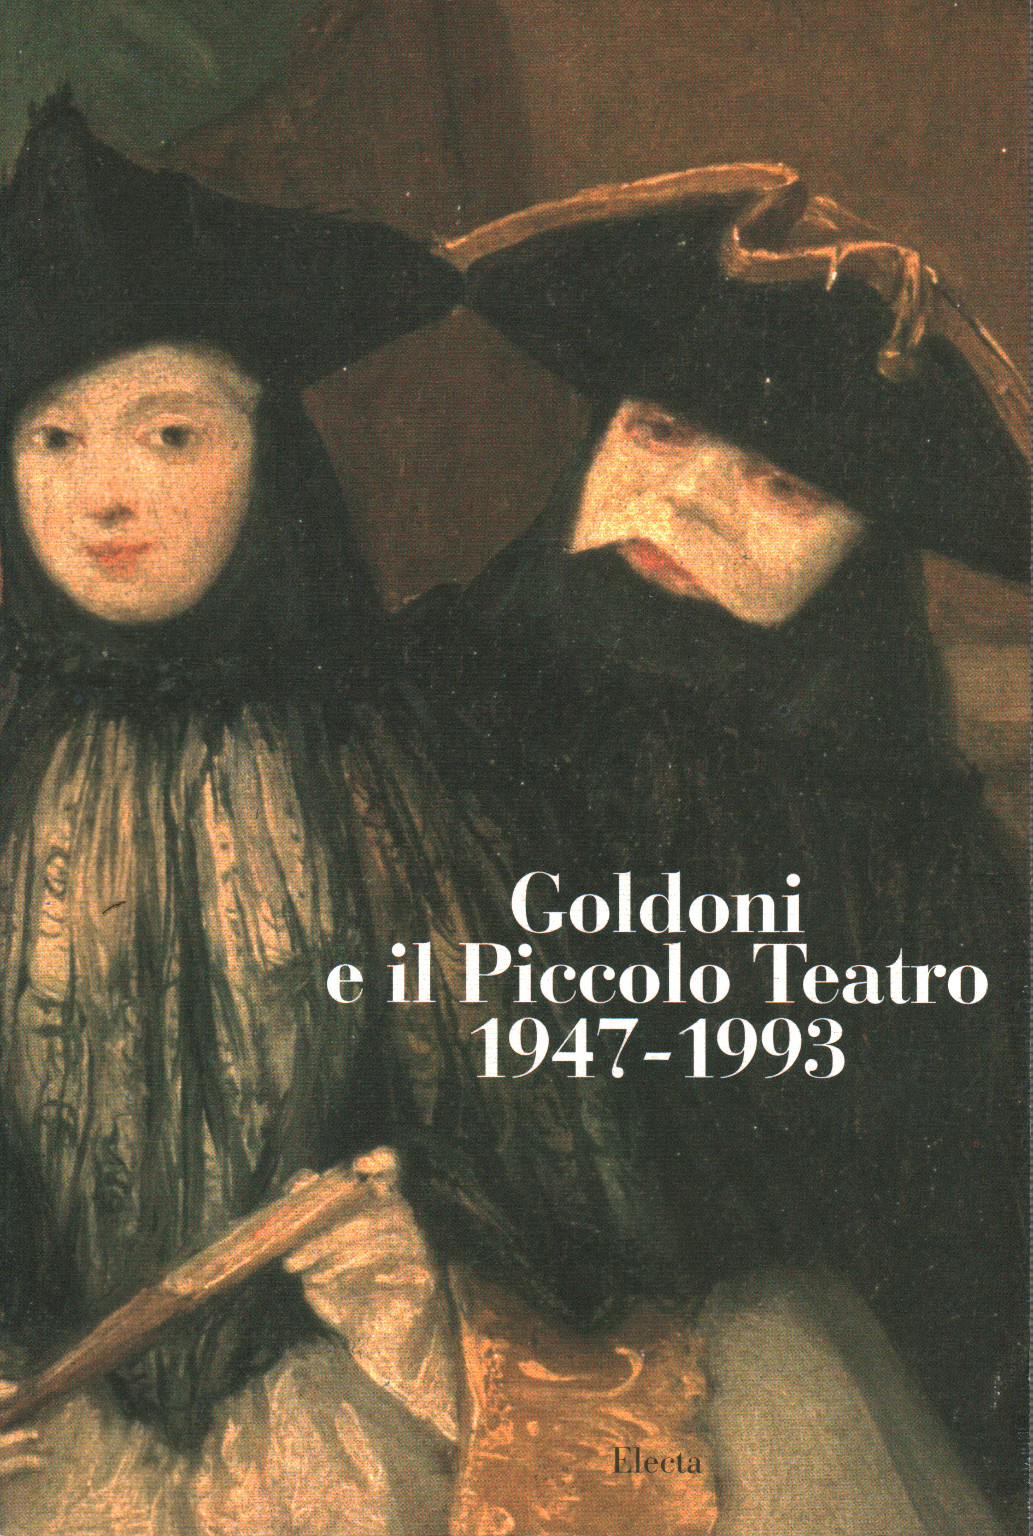 Goldoni e il Piccolo Teatro 1947-1993, s.a.